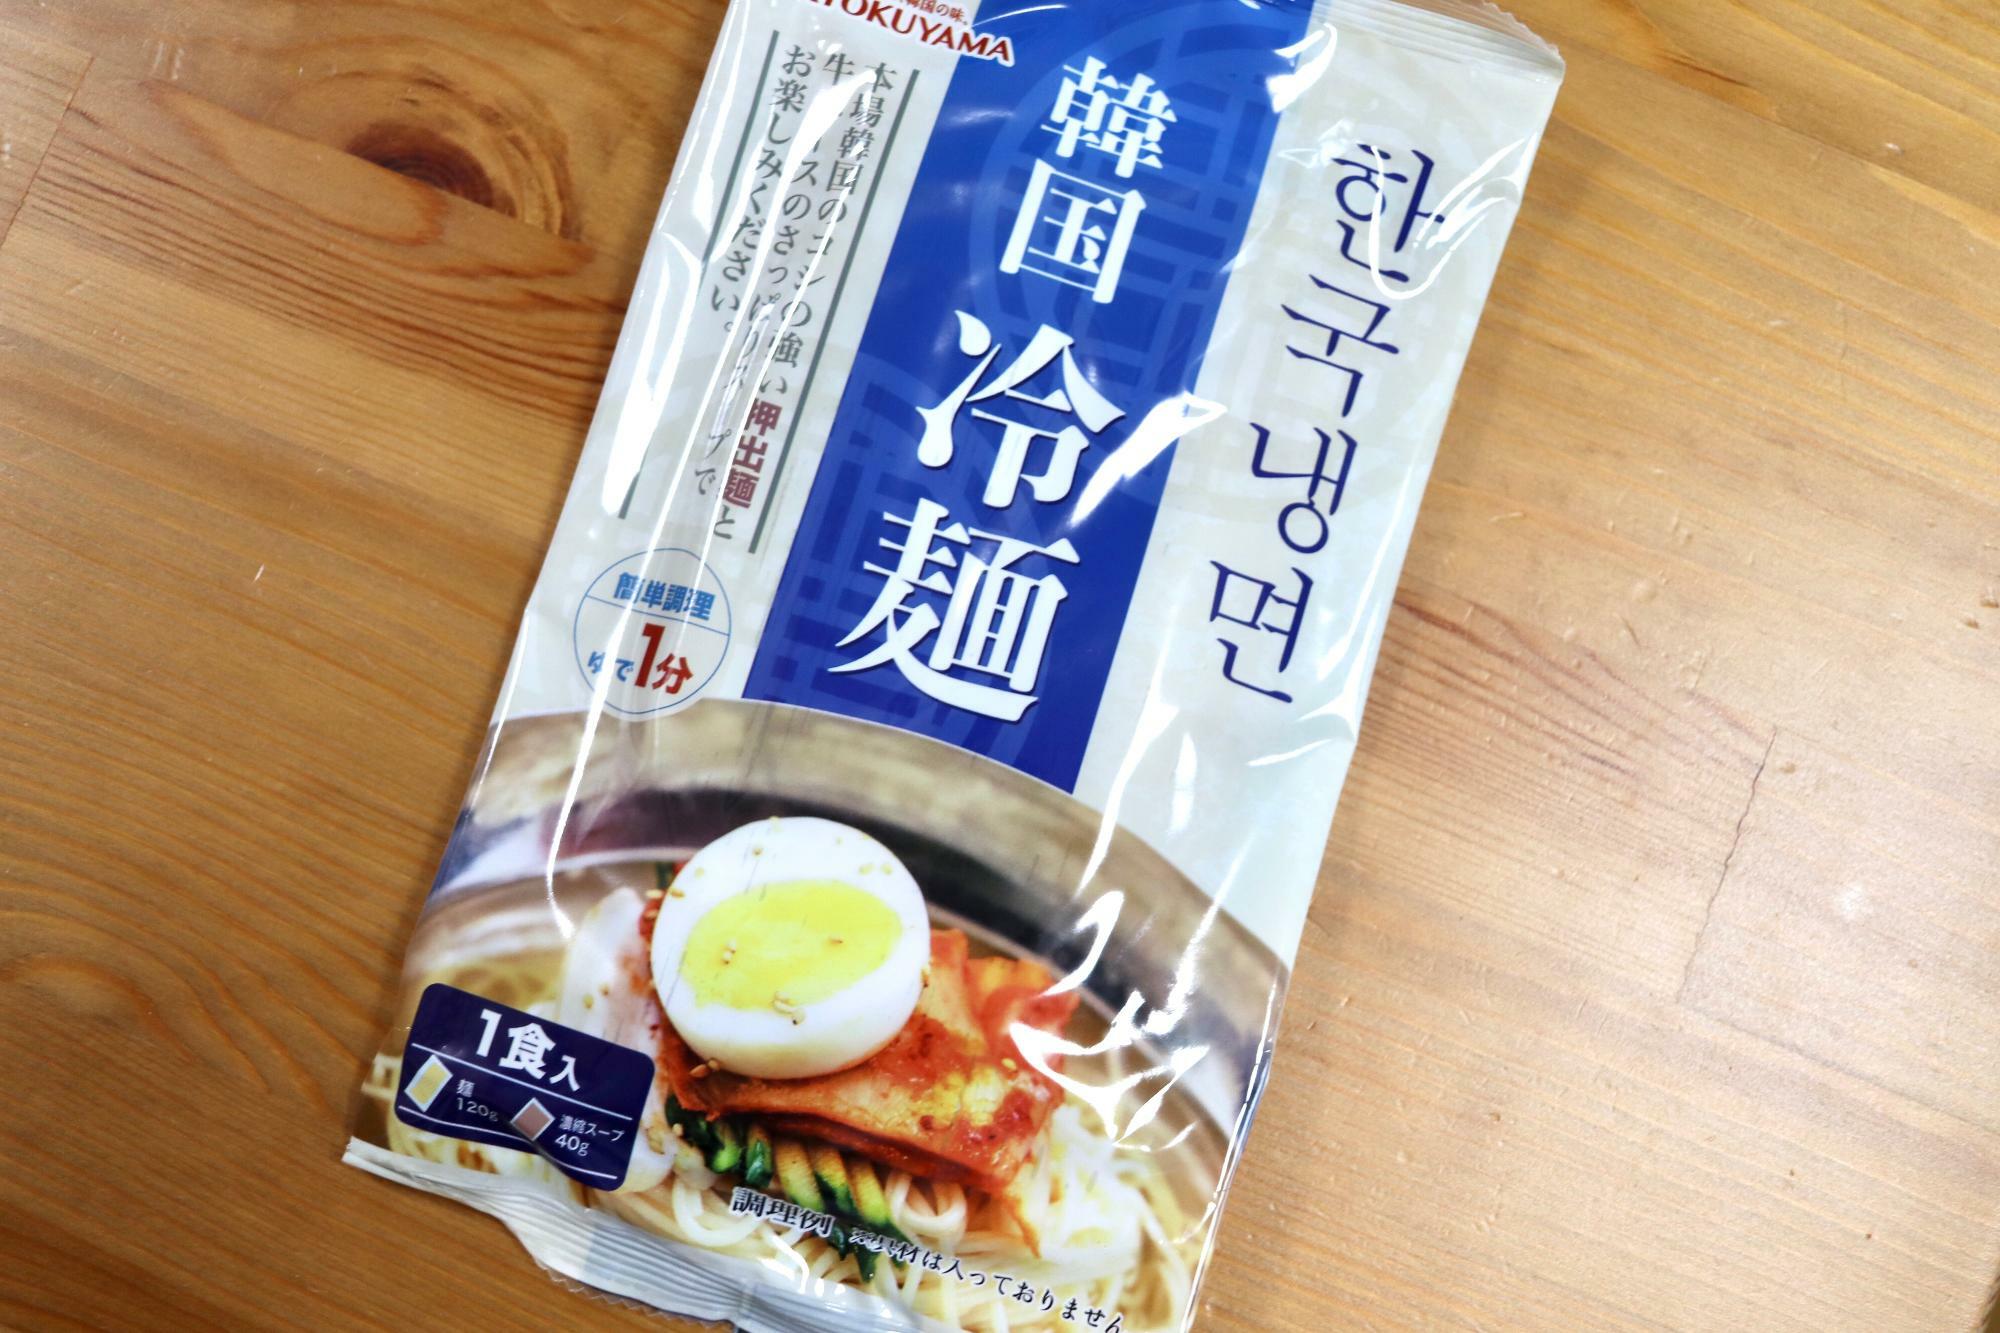 「韓国冷麺」139円税込